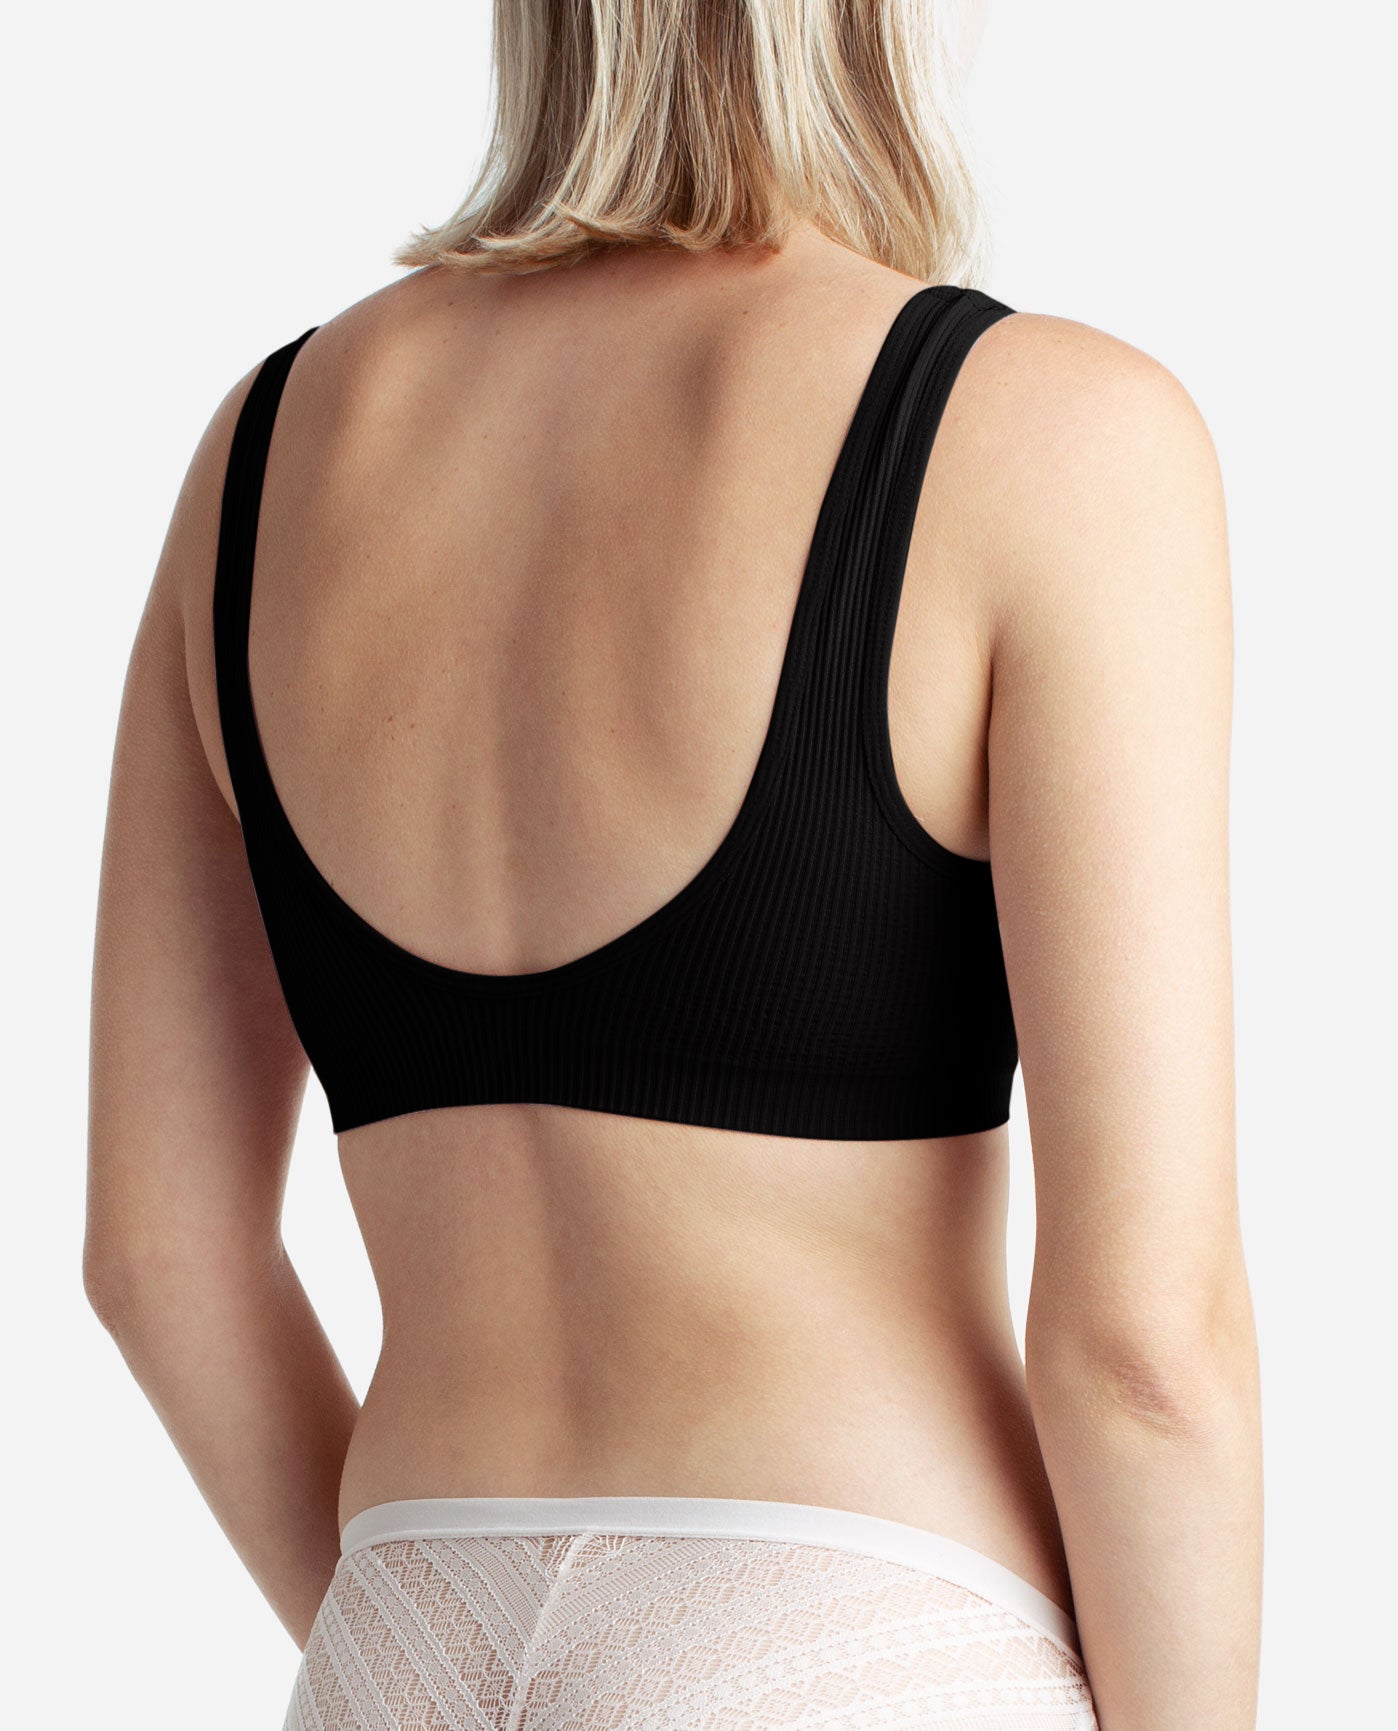 Brand Max Designer Outlet - Danskin women's underwear 😃 Designer